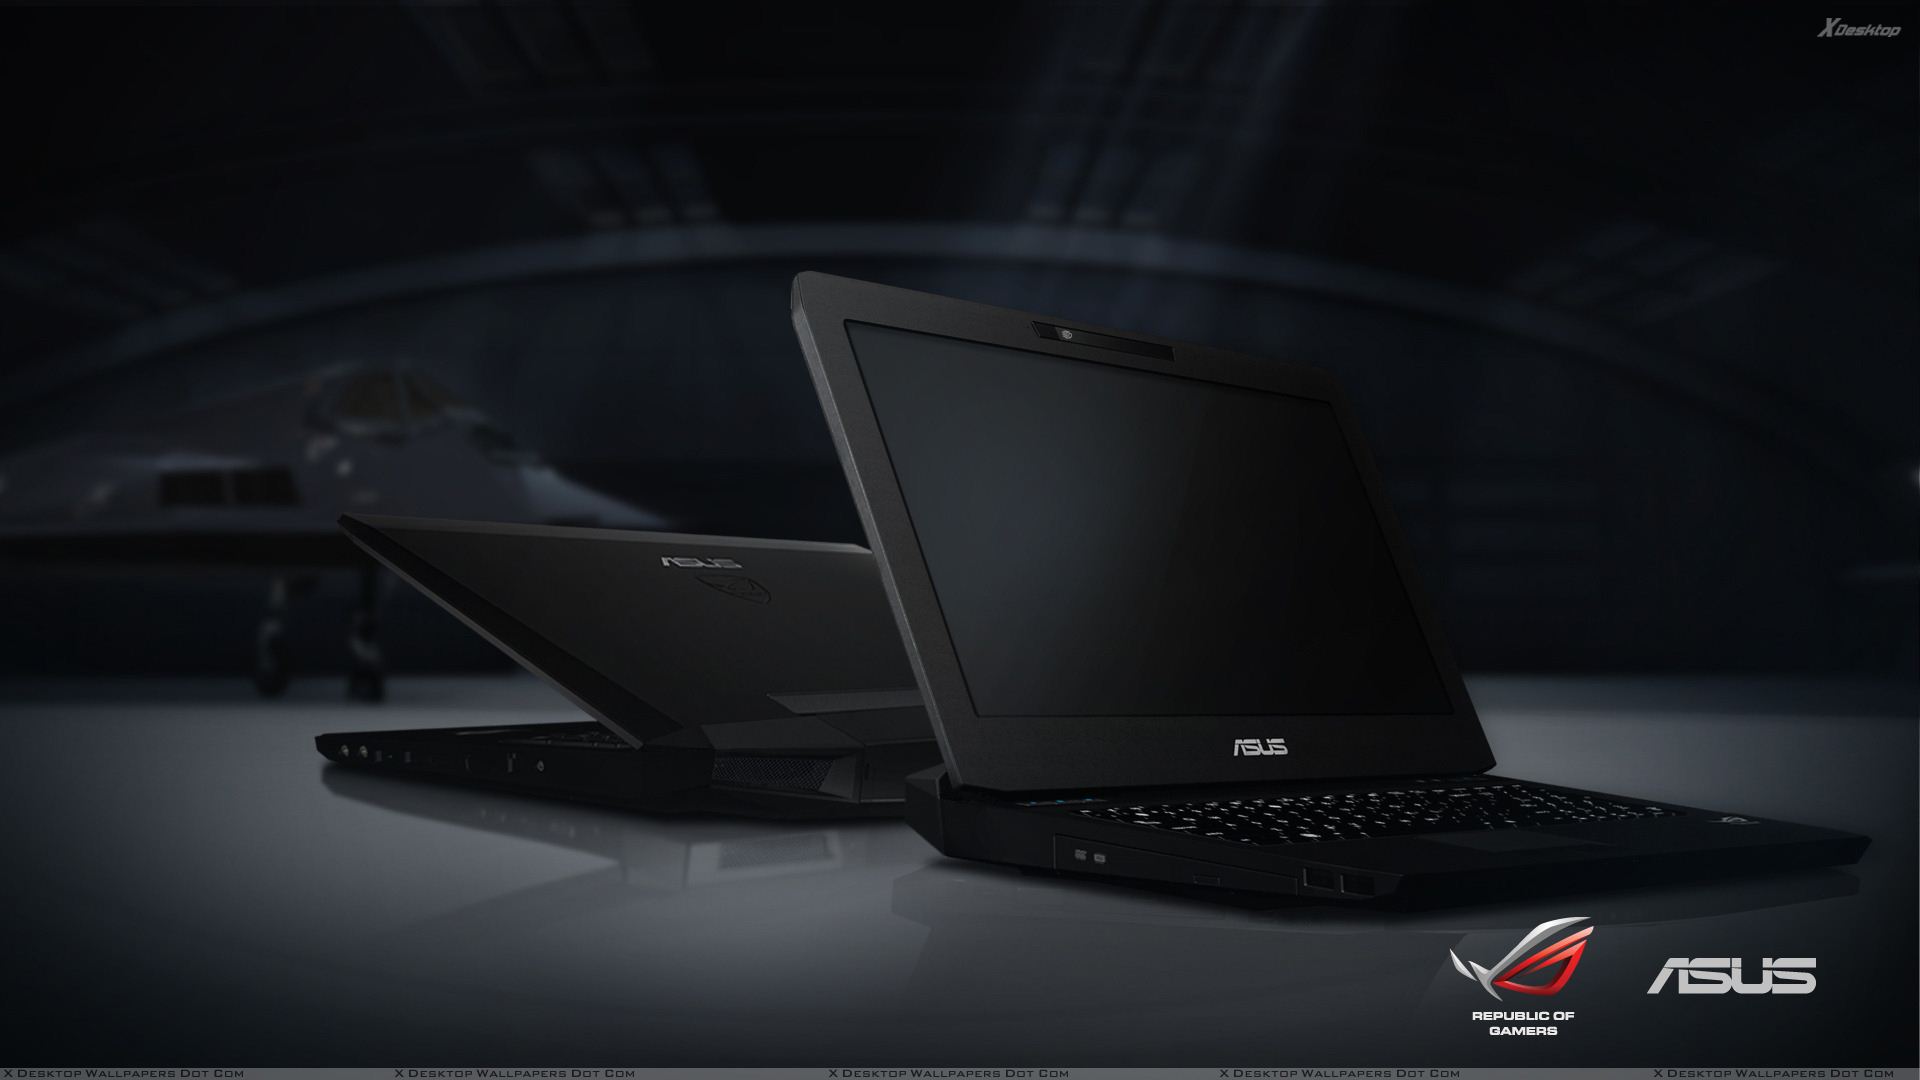 Asus Laptop In Dark - HD Wallpaper 